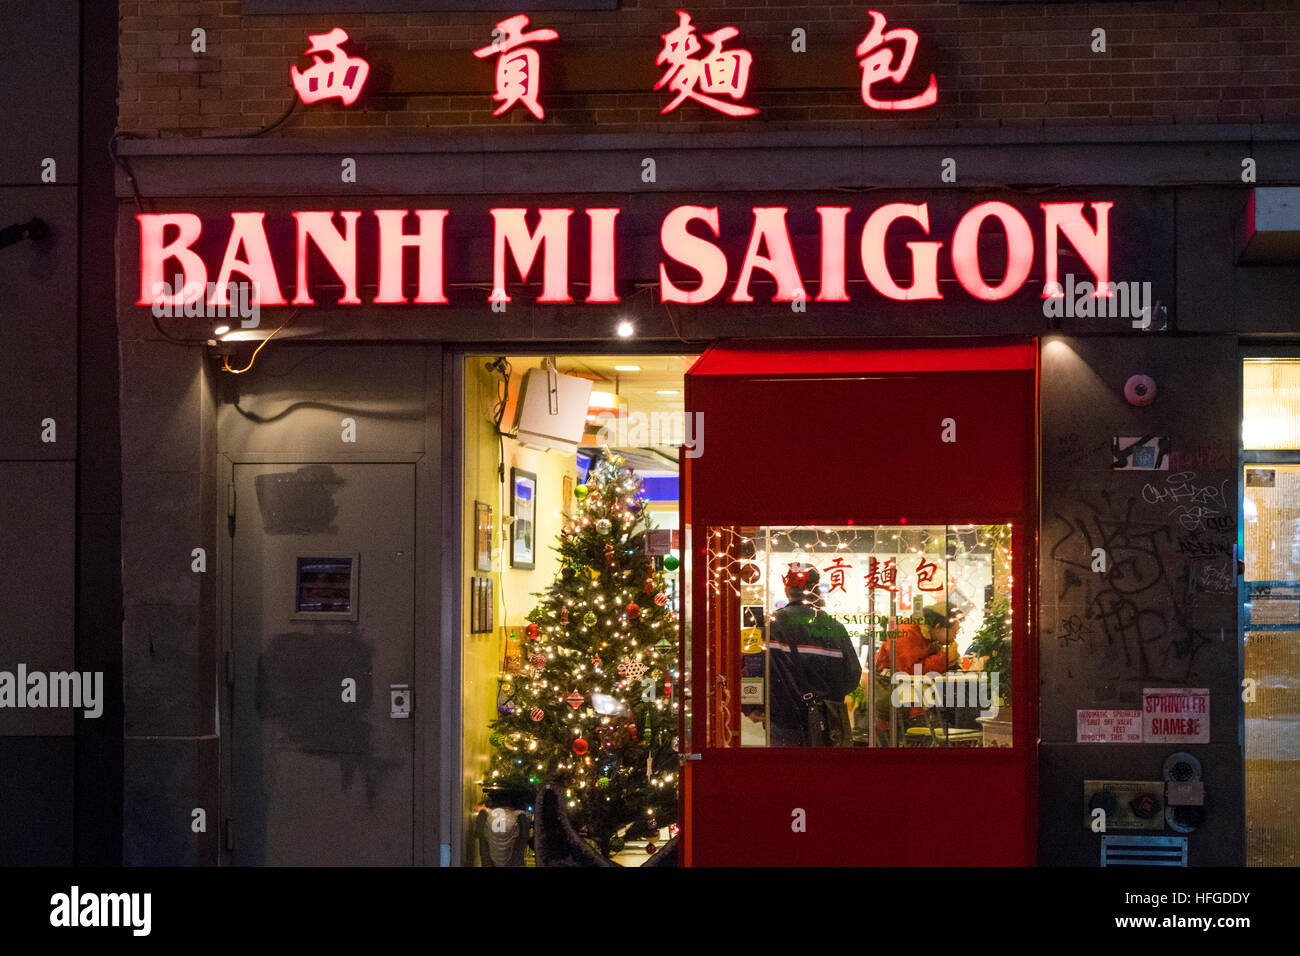 Benh Mi Saigon, une sandwicherie vietnamienne dans la Petite Italie de New York City Banque D'Images